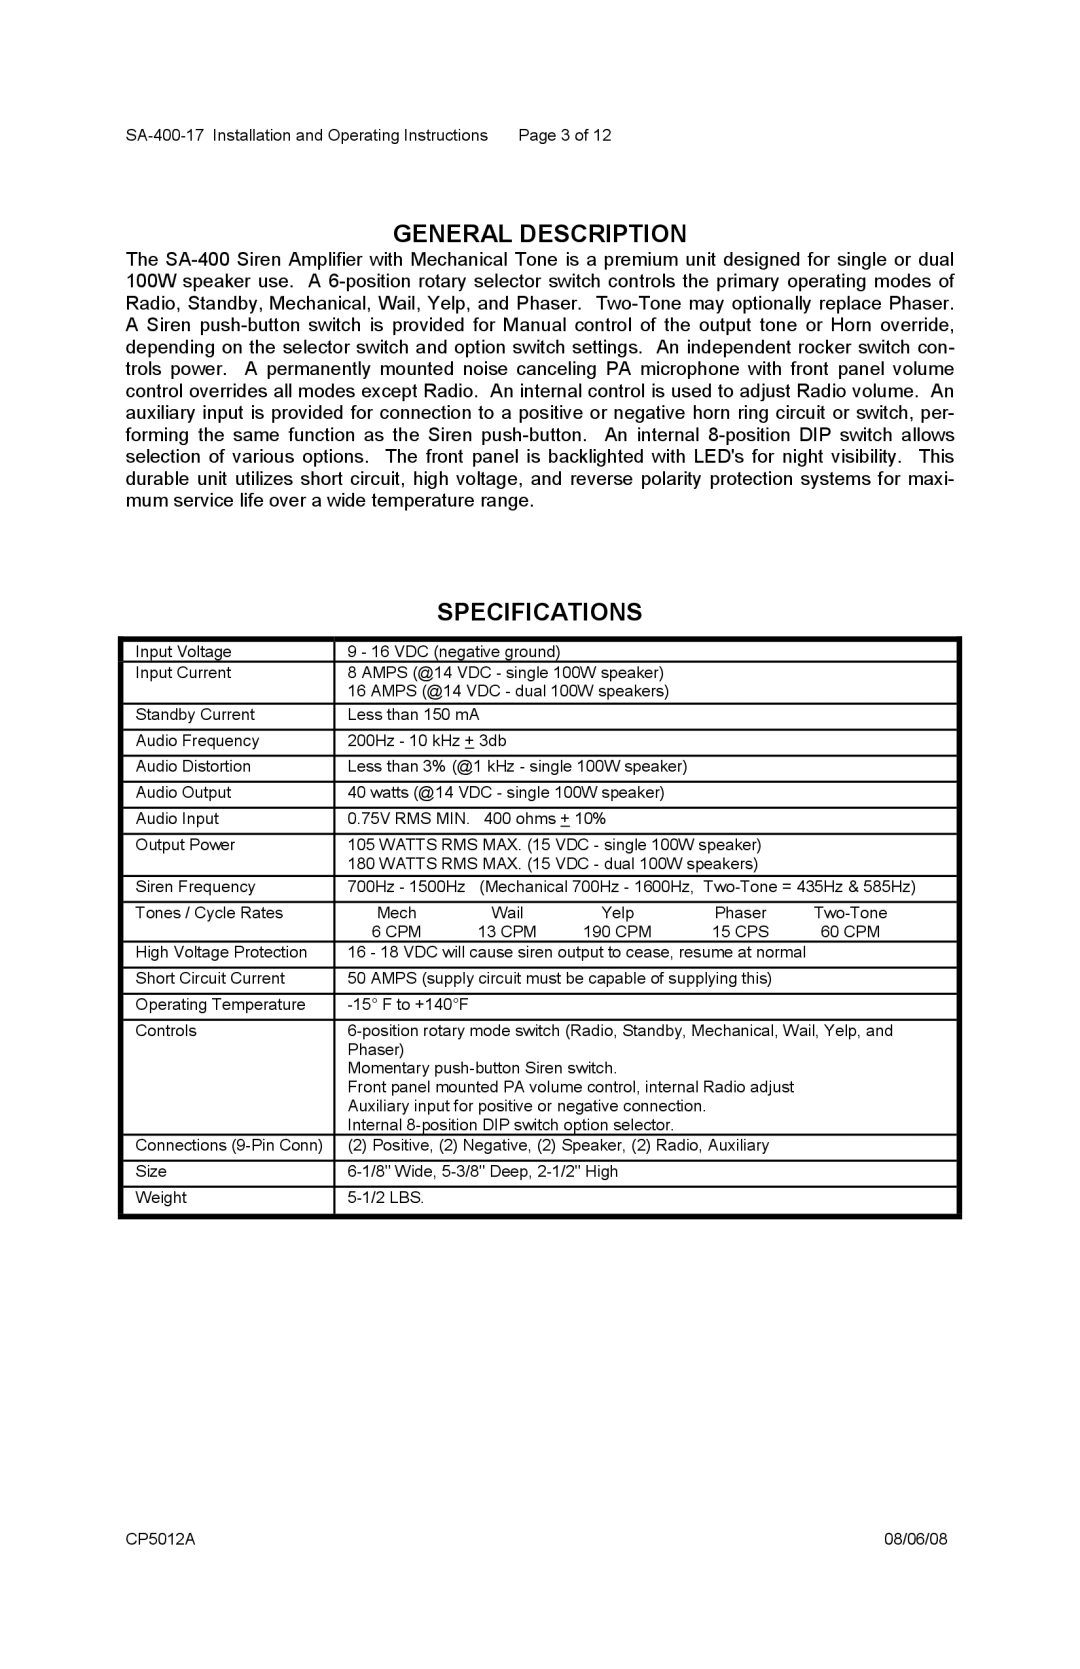 Carson SA-400-17 manual General Description, Specifications 